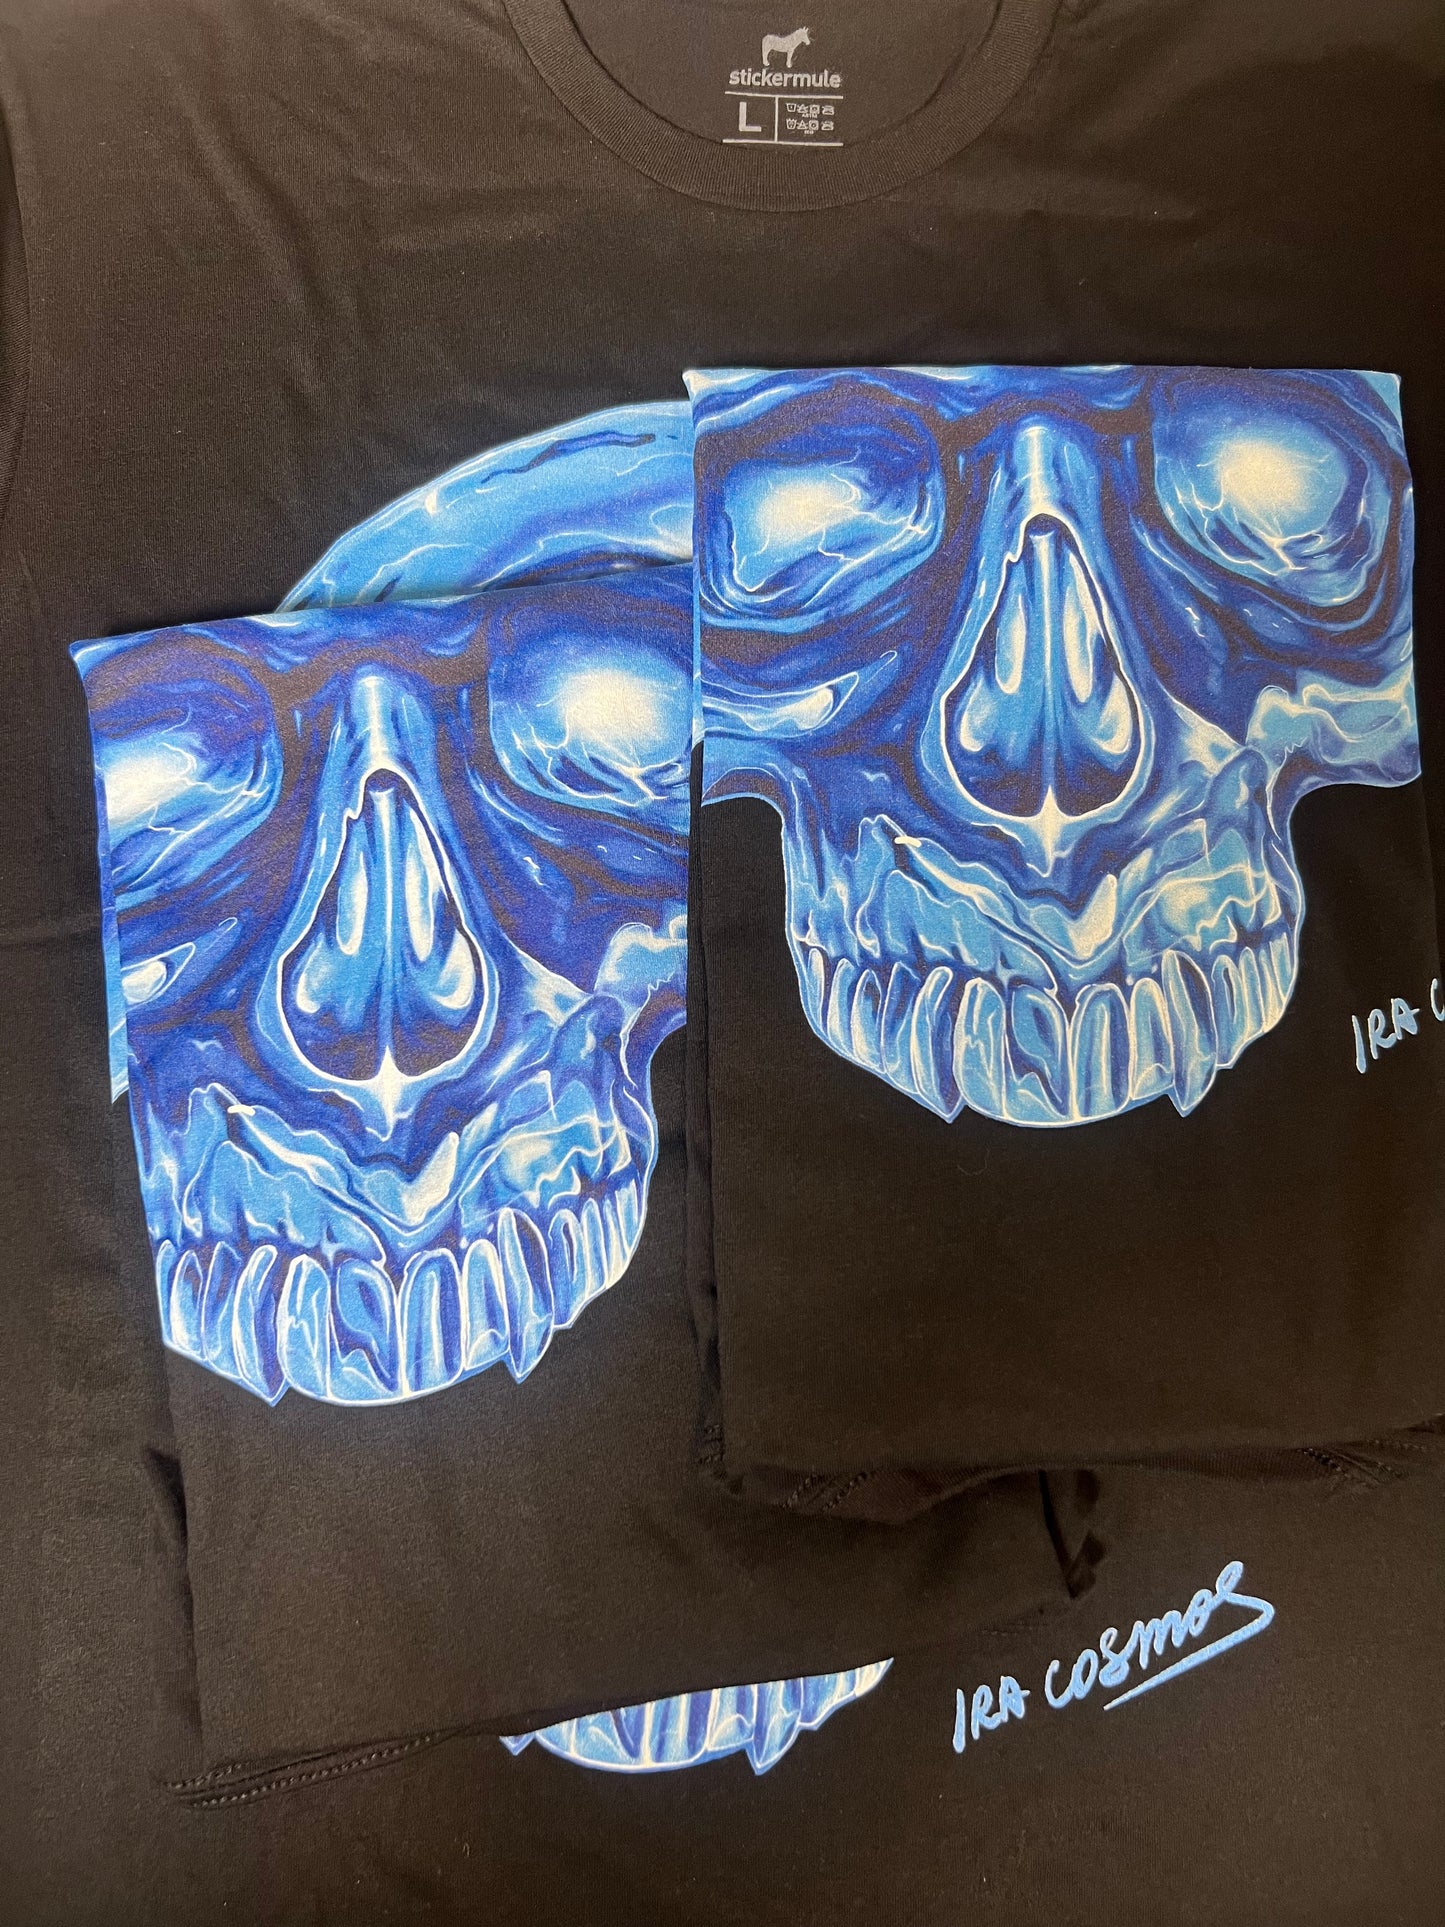 Crystal Skull T-shirt